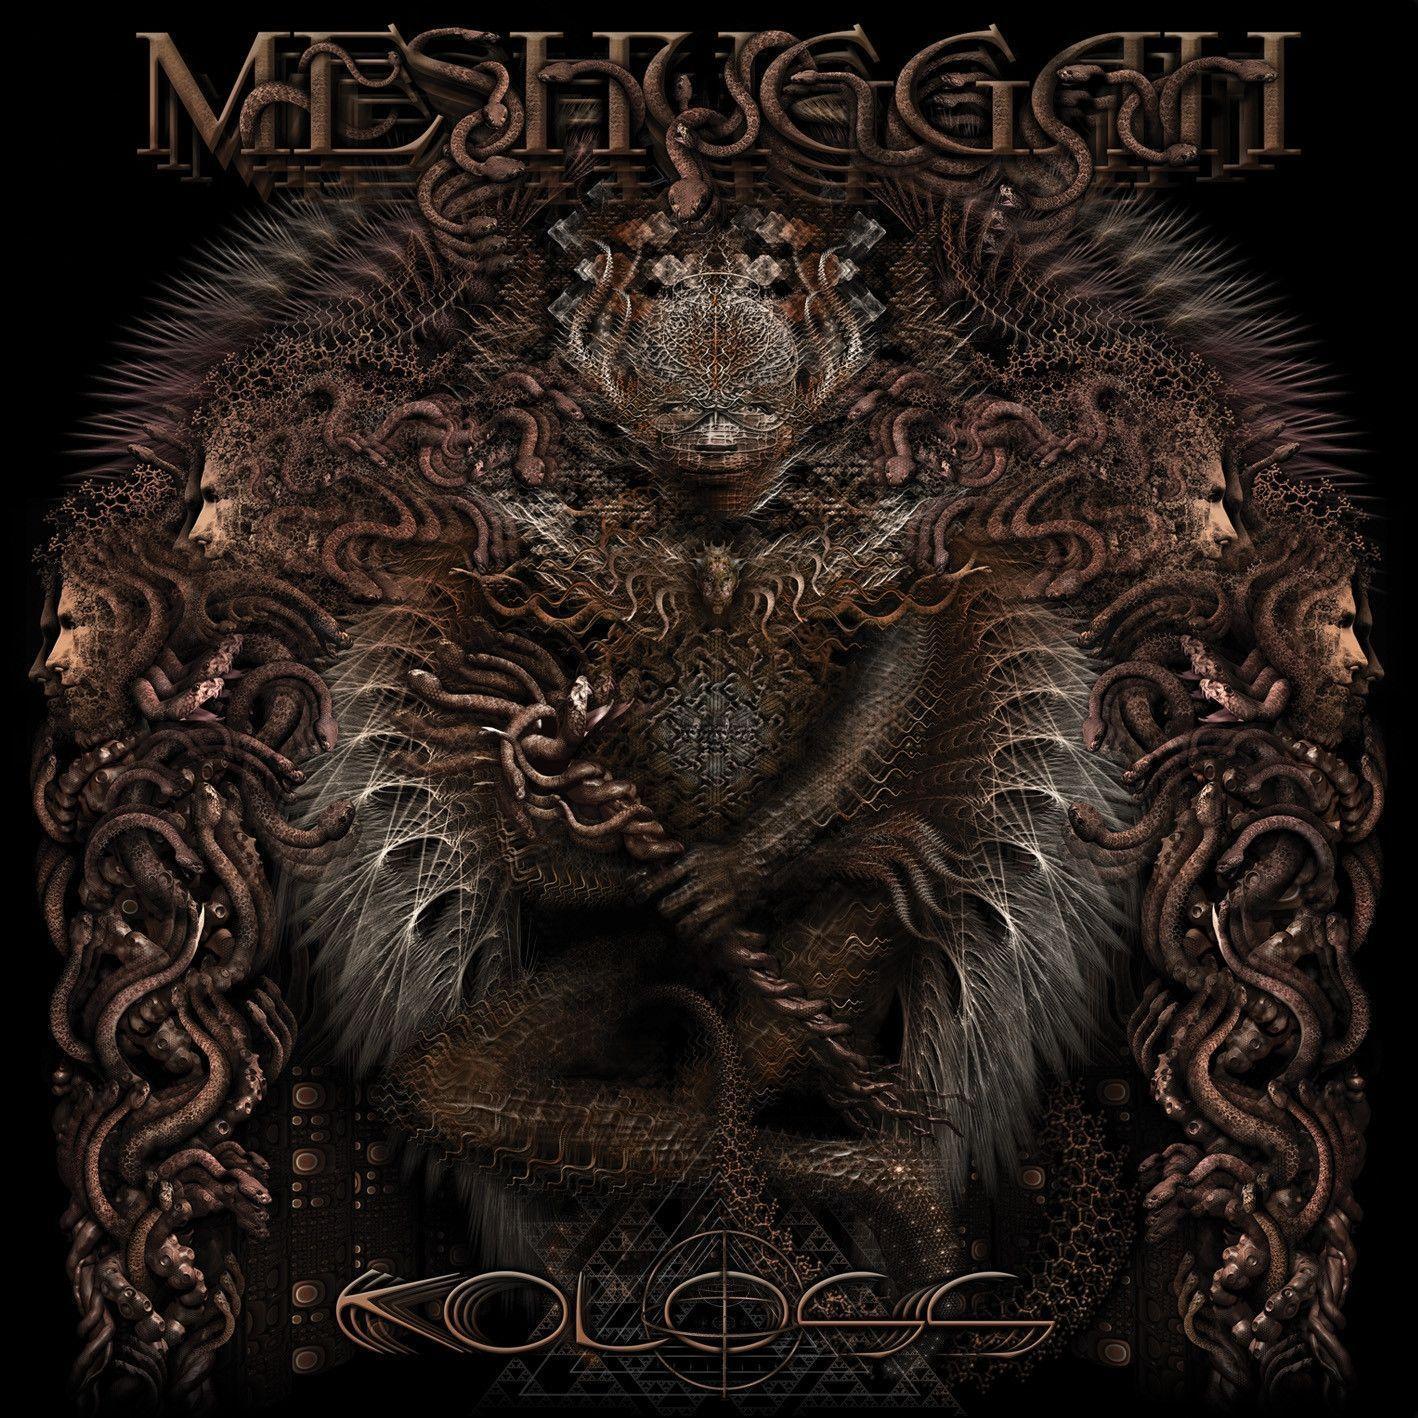 Meshuggah Wallpapers